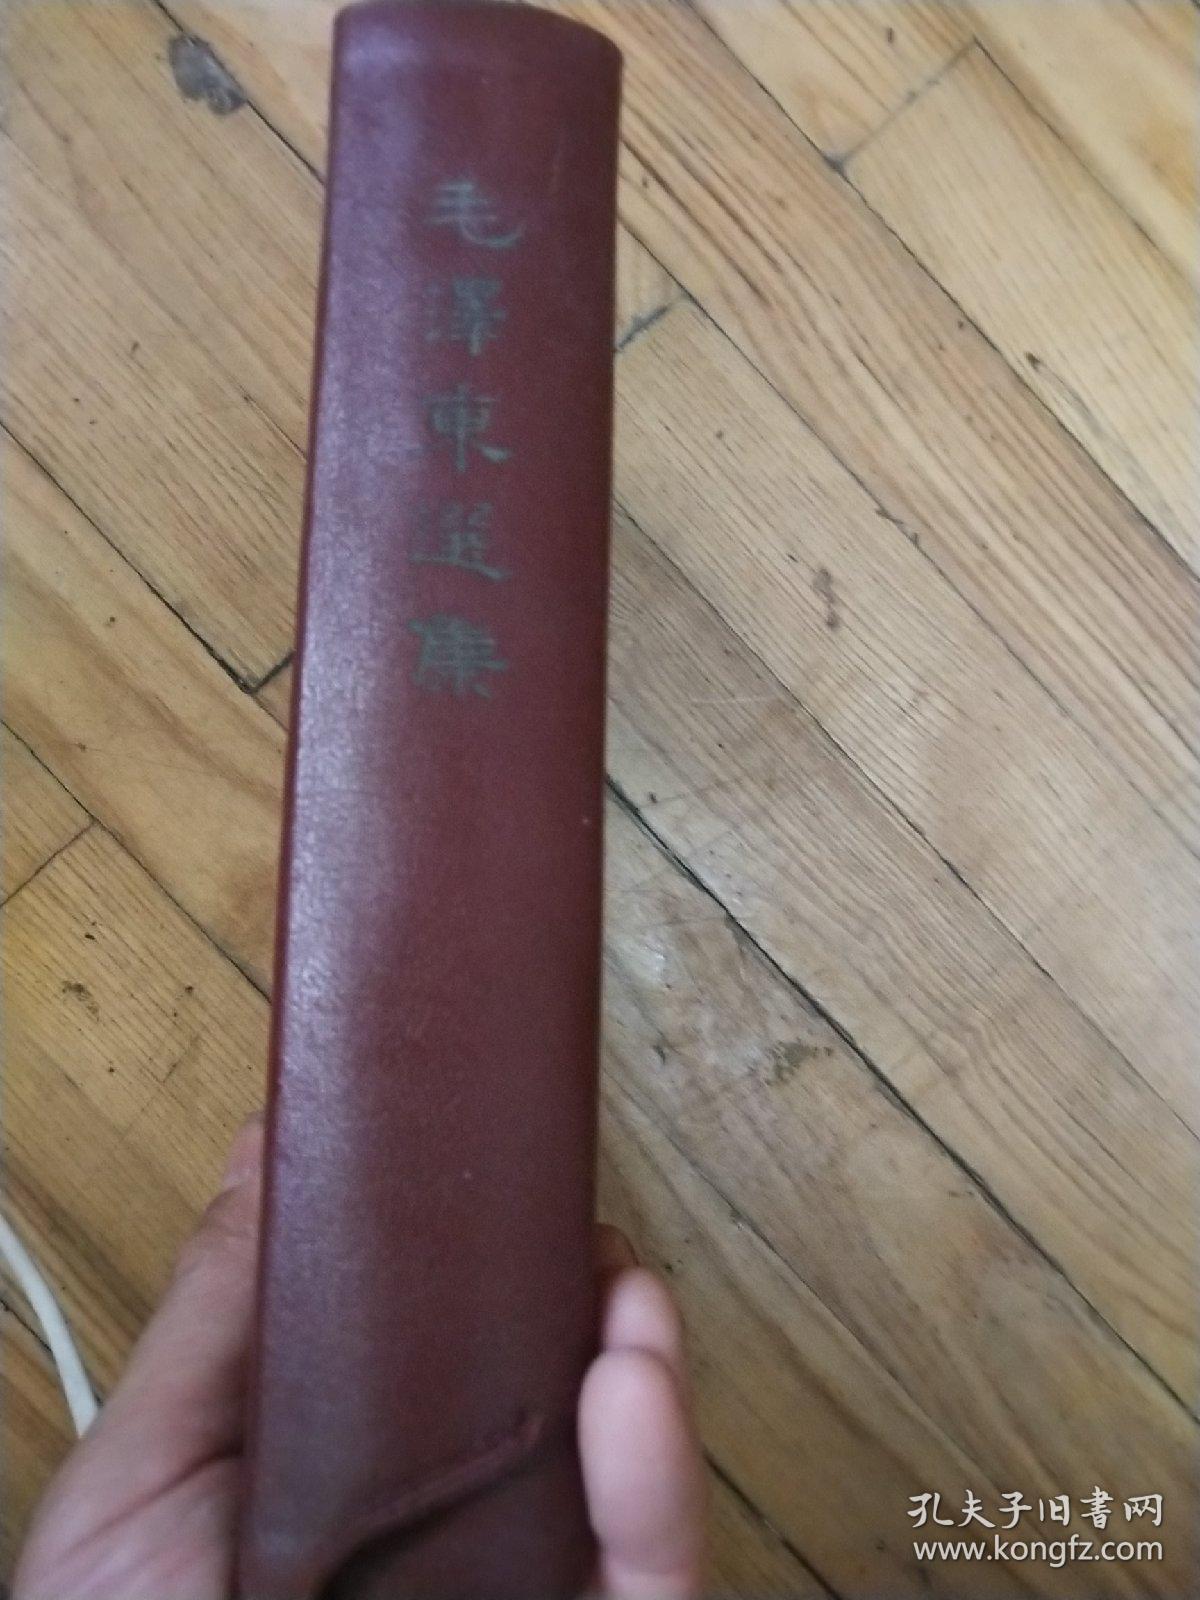 毛泽东选集 一卷本 精装1966年 1版1印 竖排